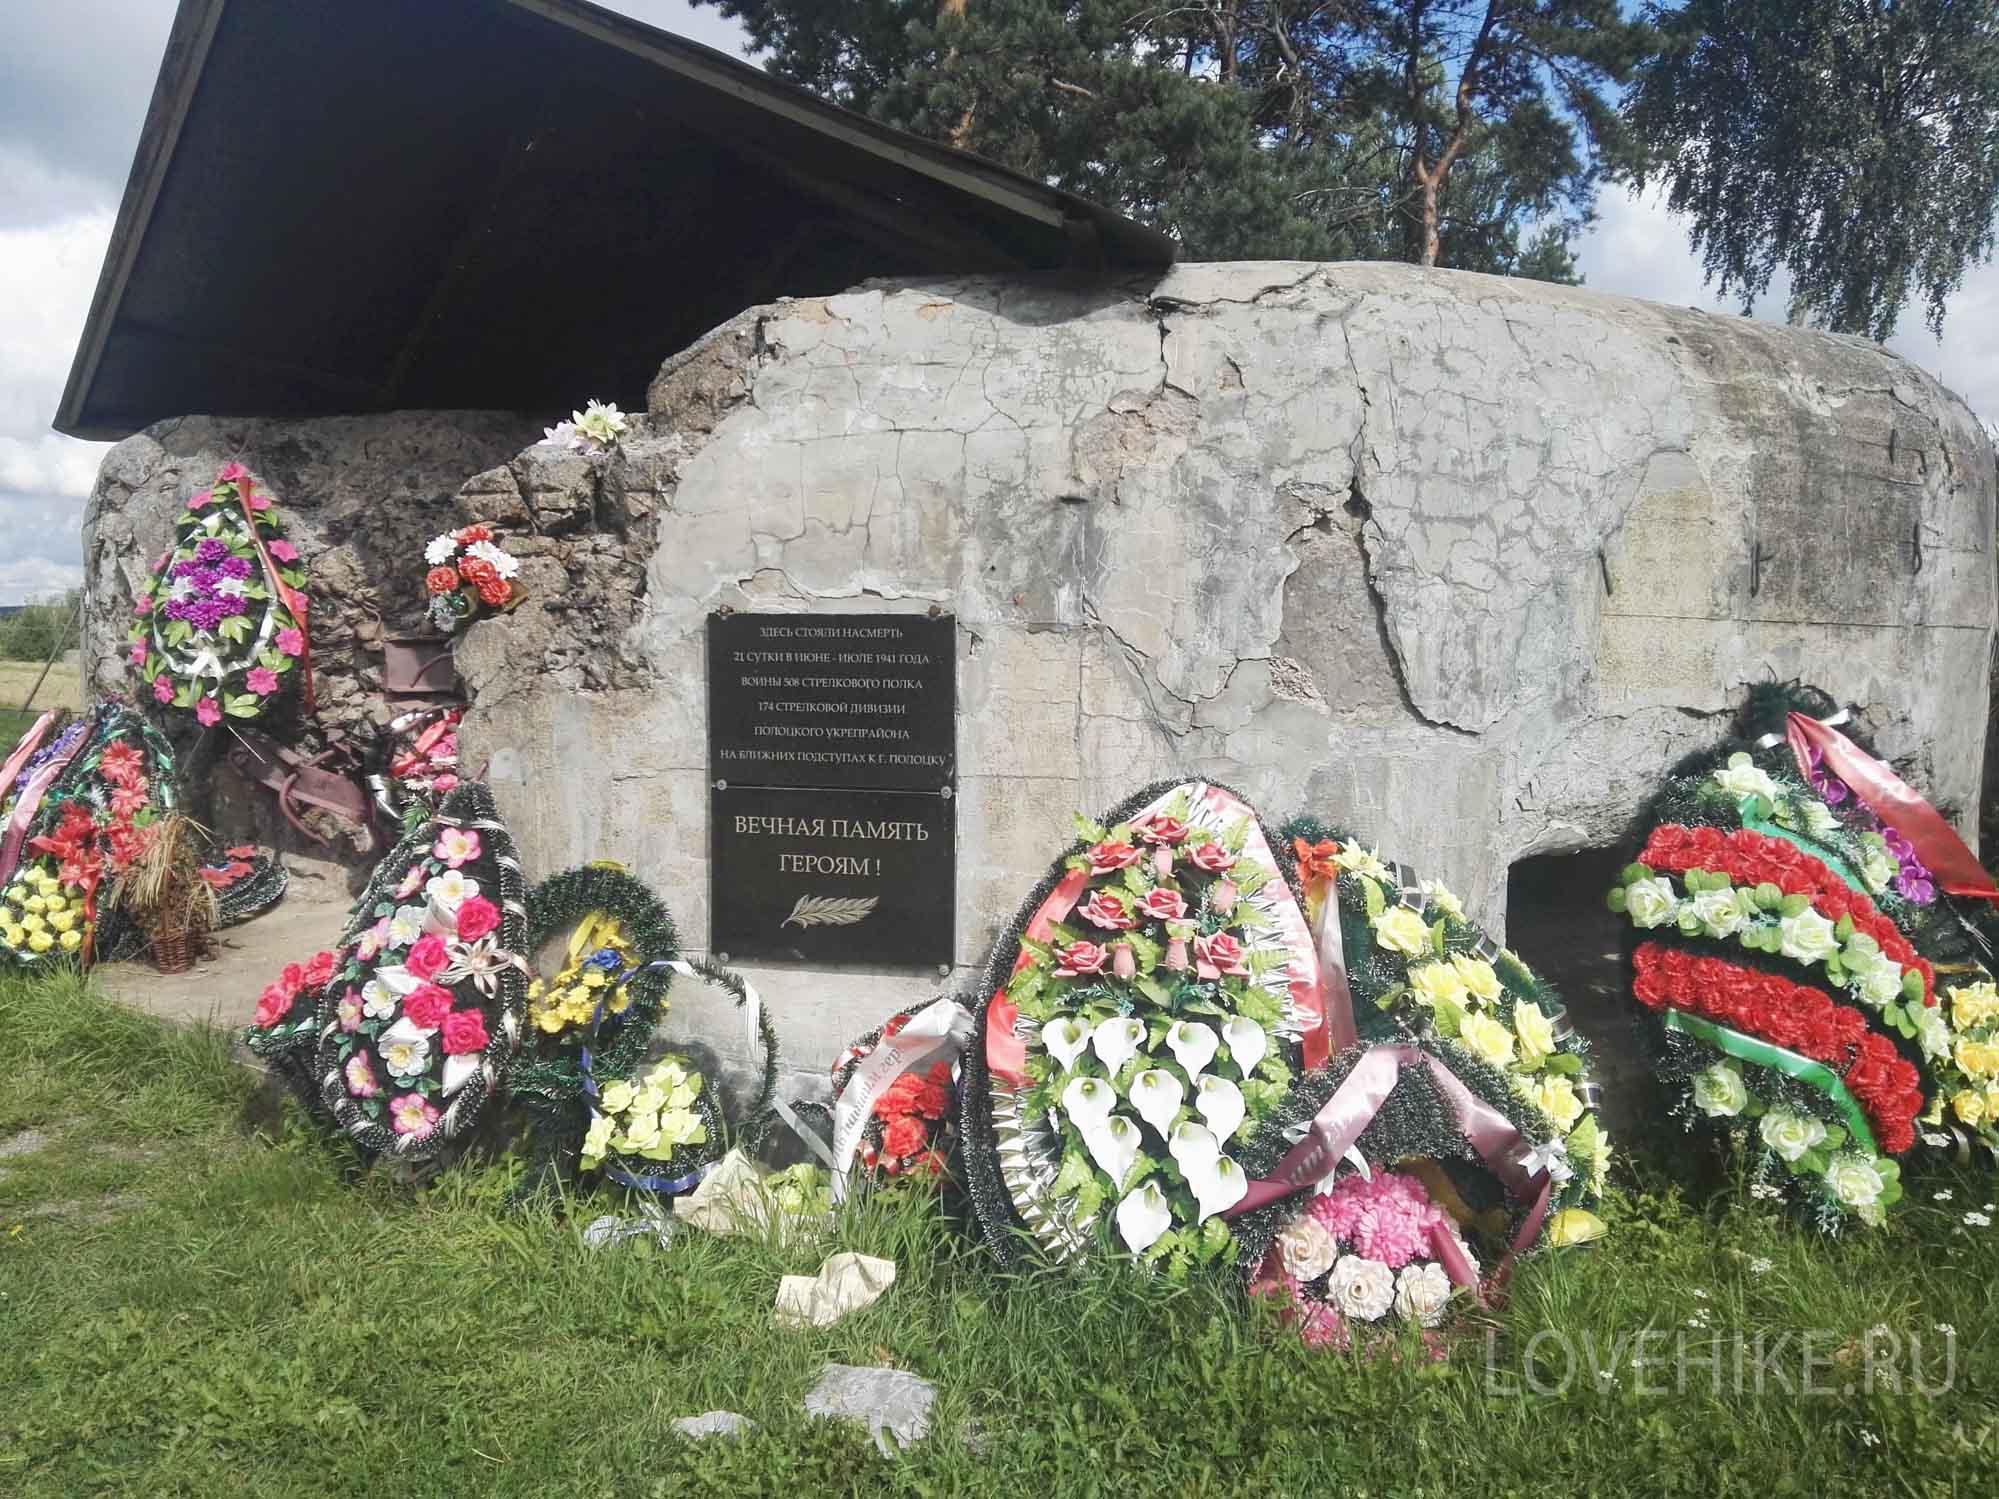 Мемориальный комплекс Поле ратной славы, Витебская область, Беларусь